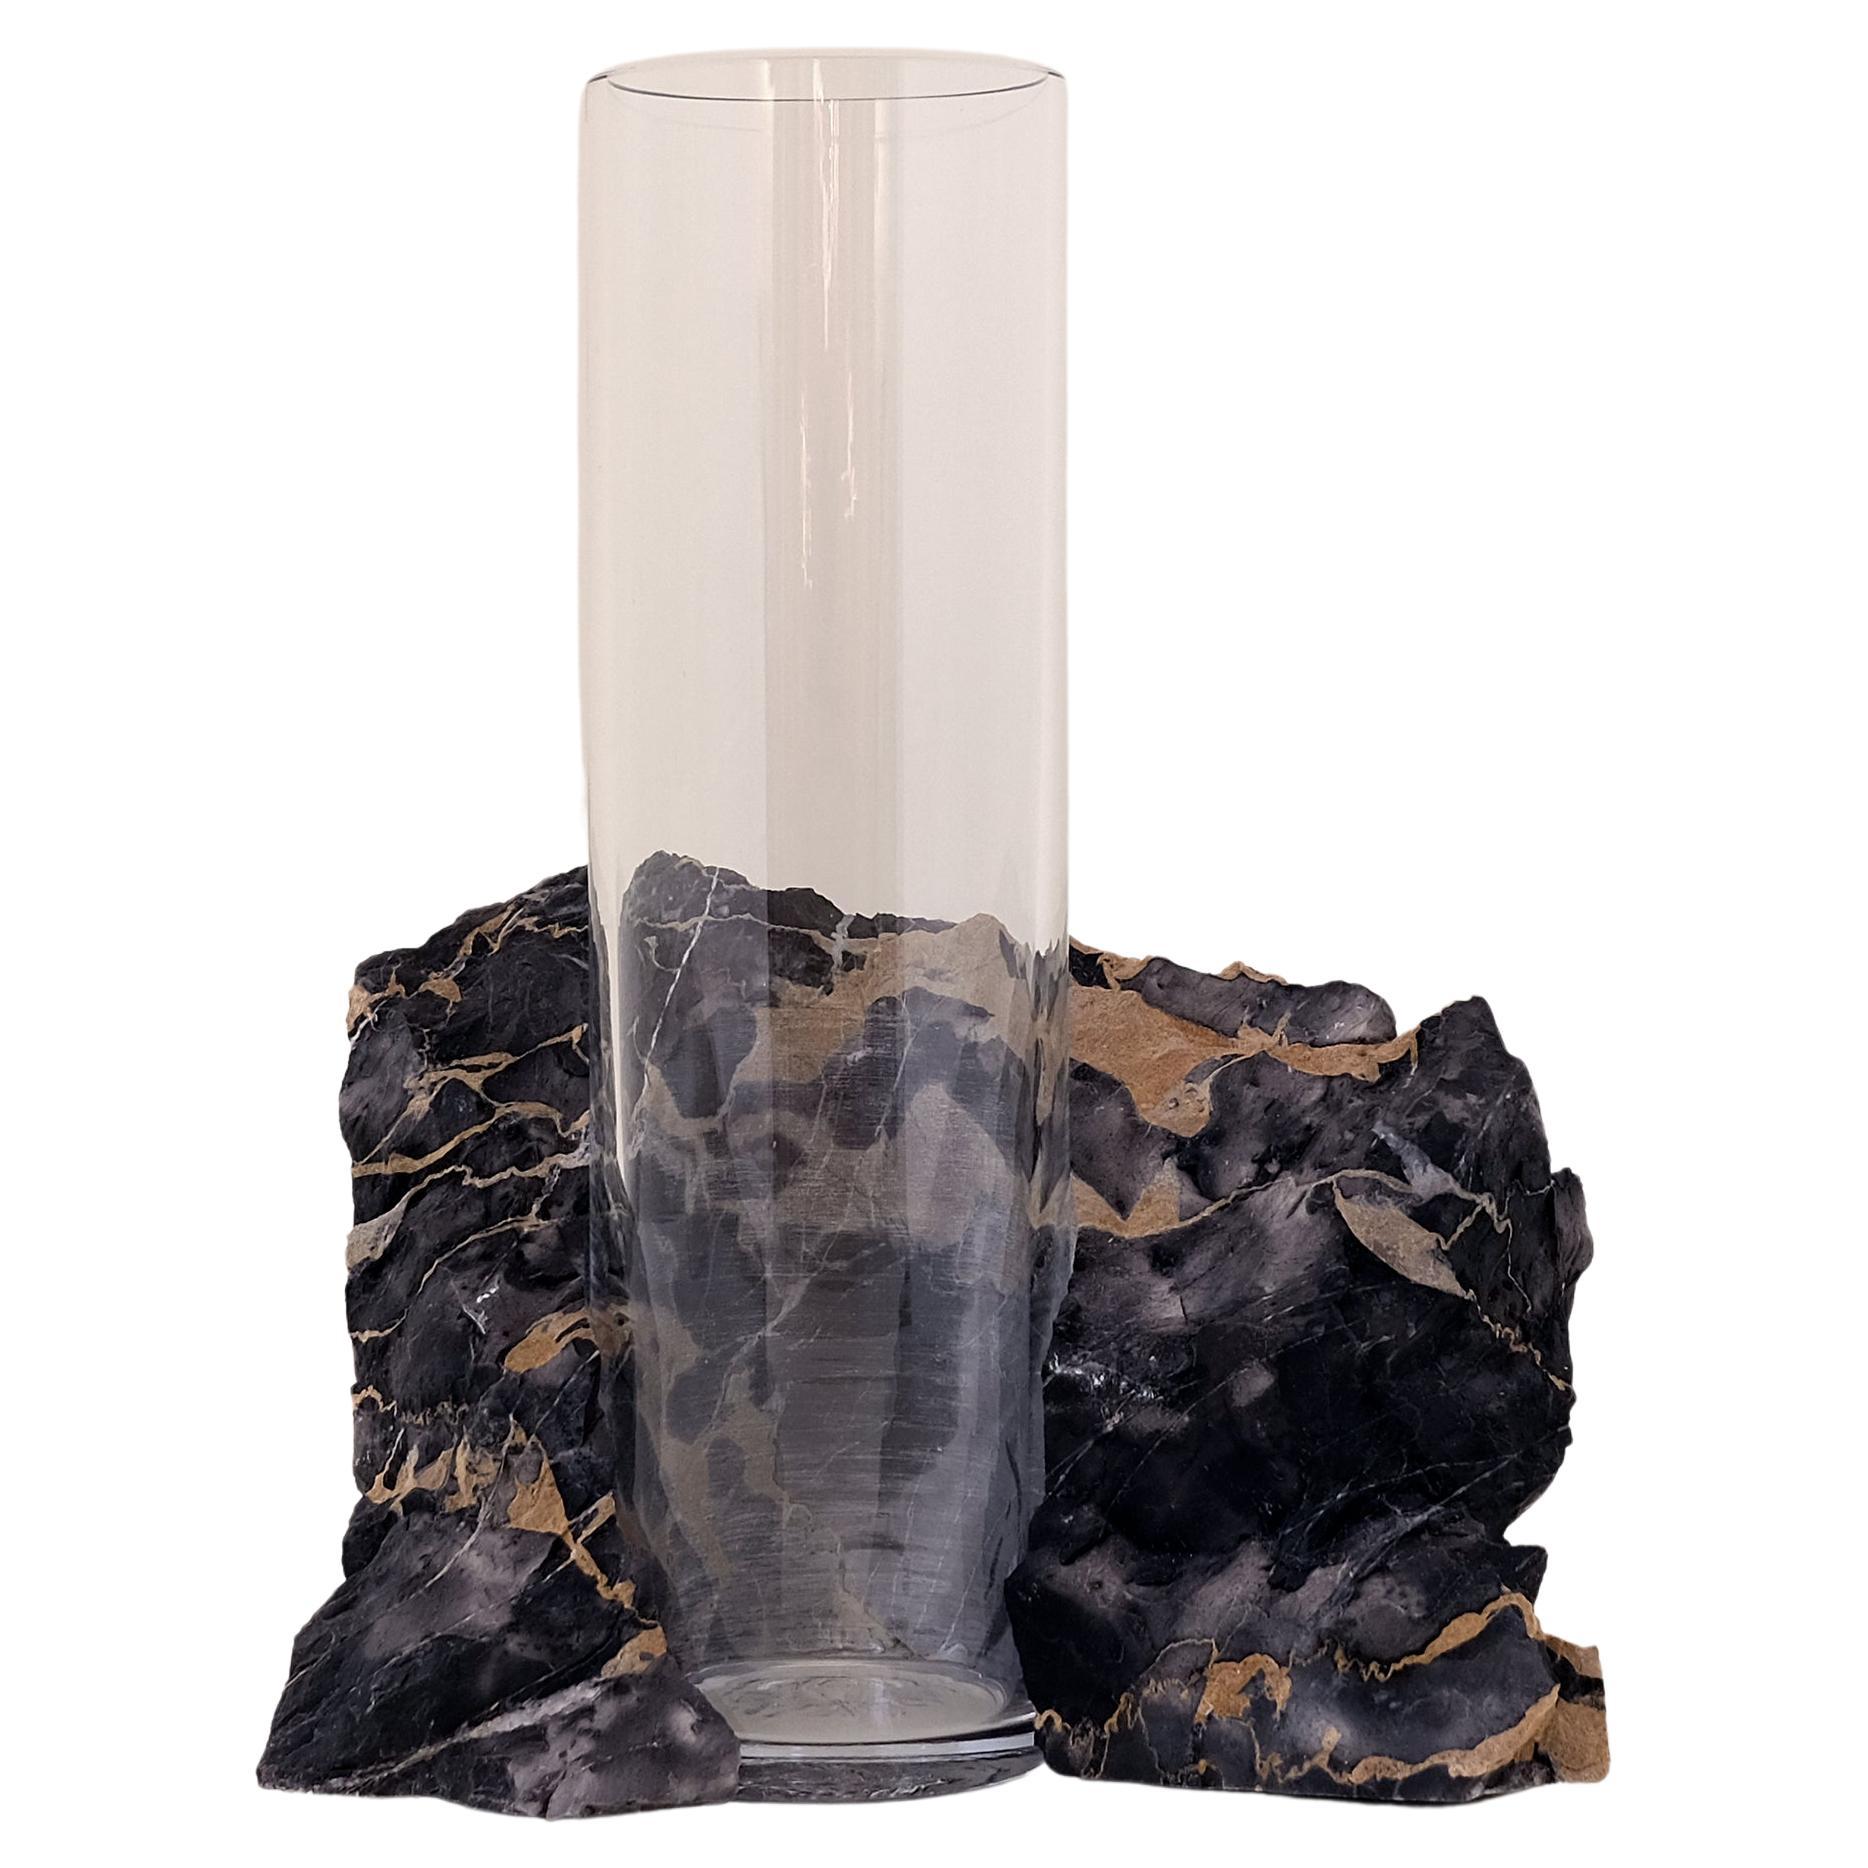 Scandinavian Modern Glass Vase, Portoro Marble, by Erik Olovsson For Sale